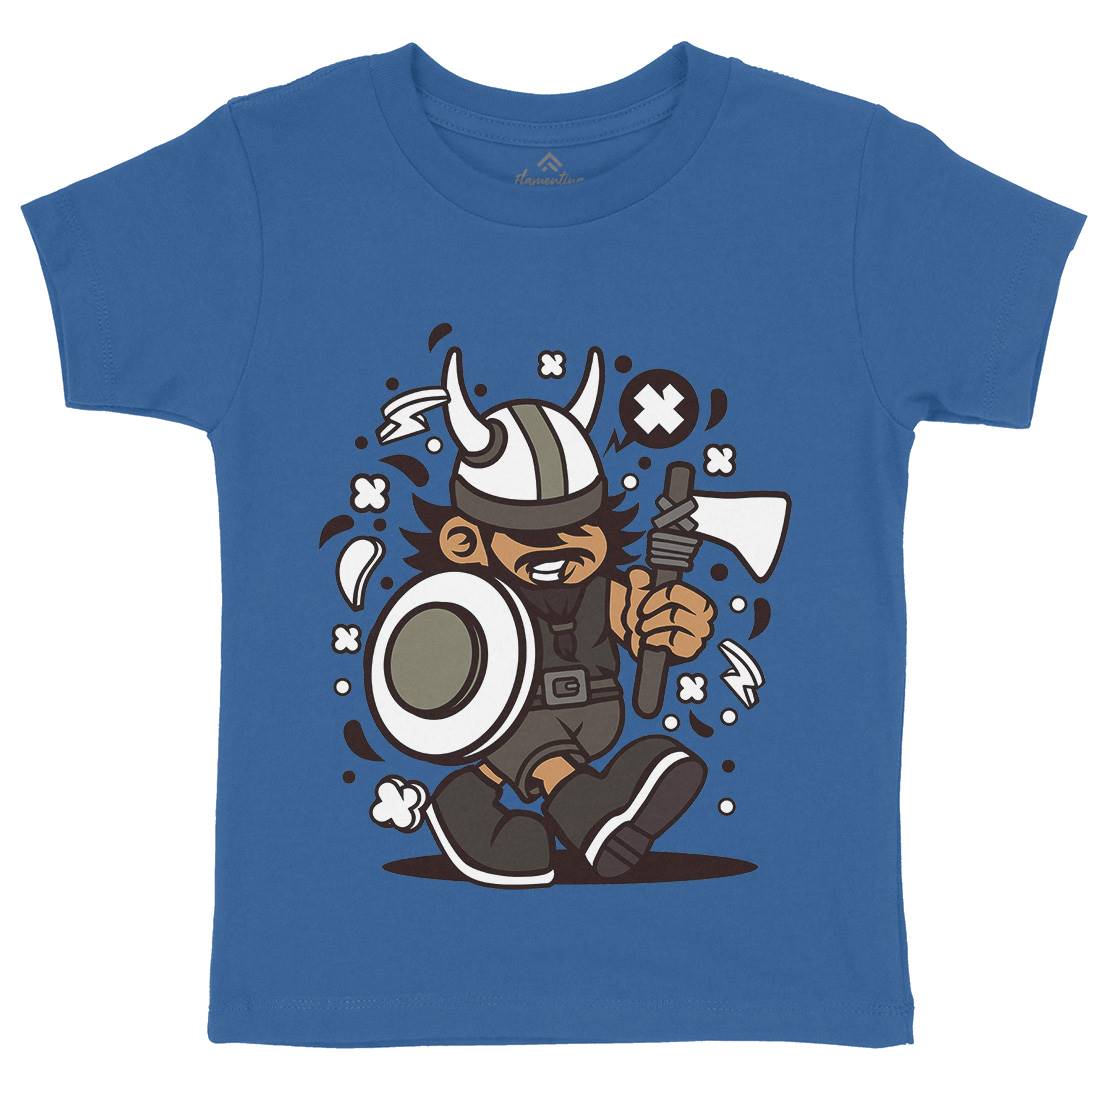 Viking Kid Kids Organic Crew Neck T-Shirt Warriors C293